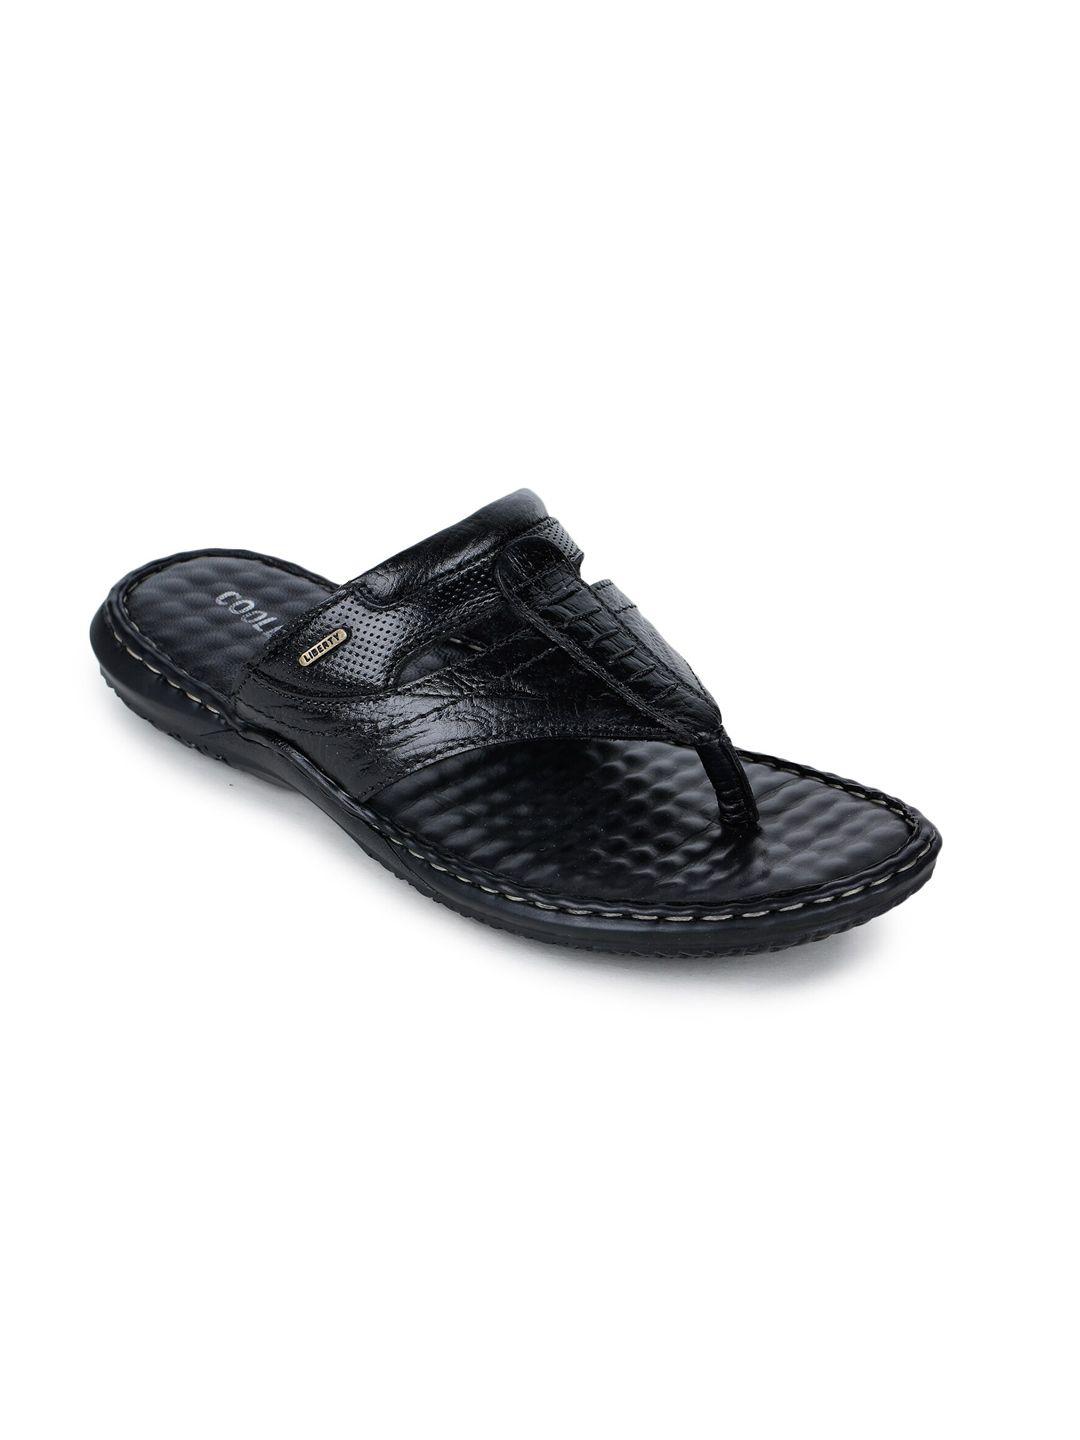 liberty men black comfort sandals